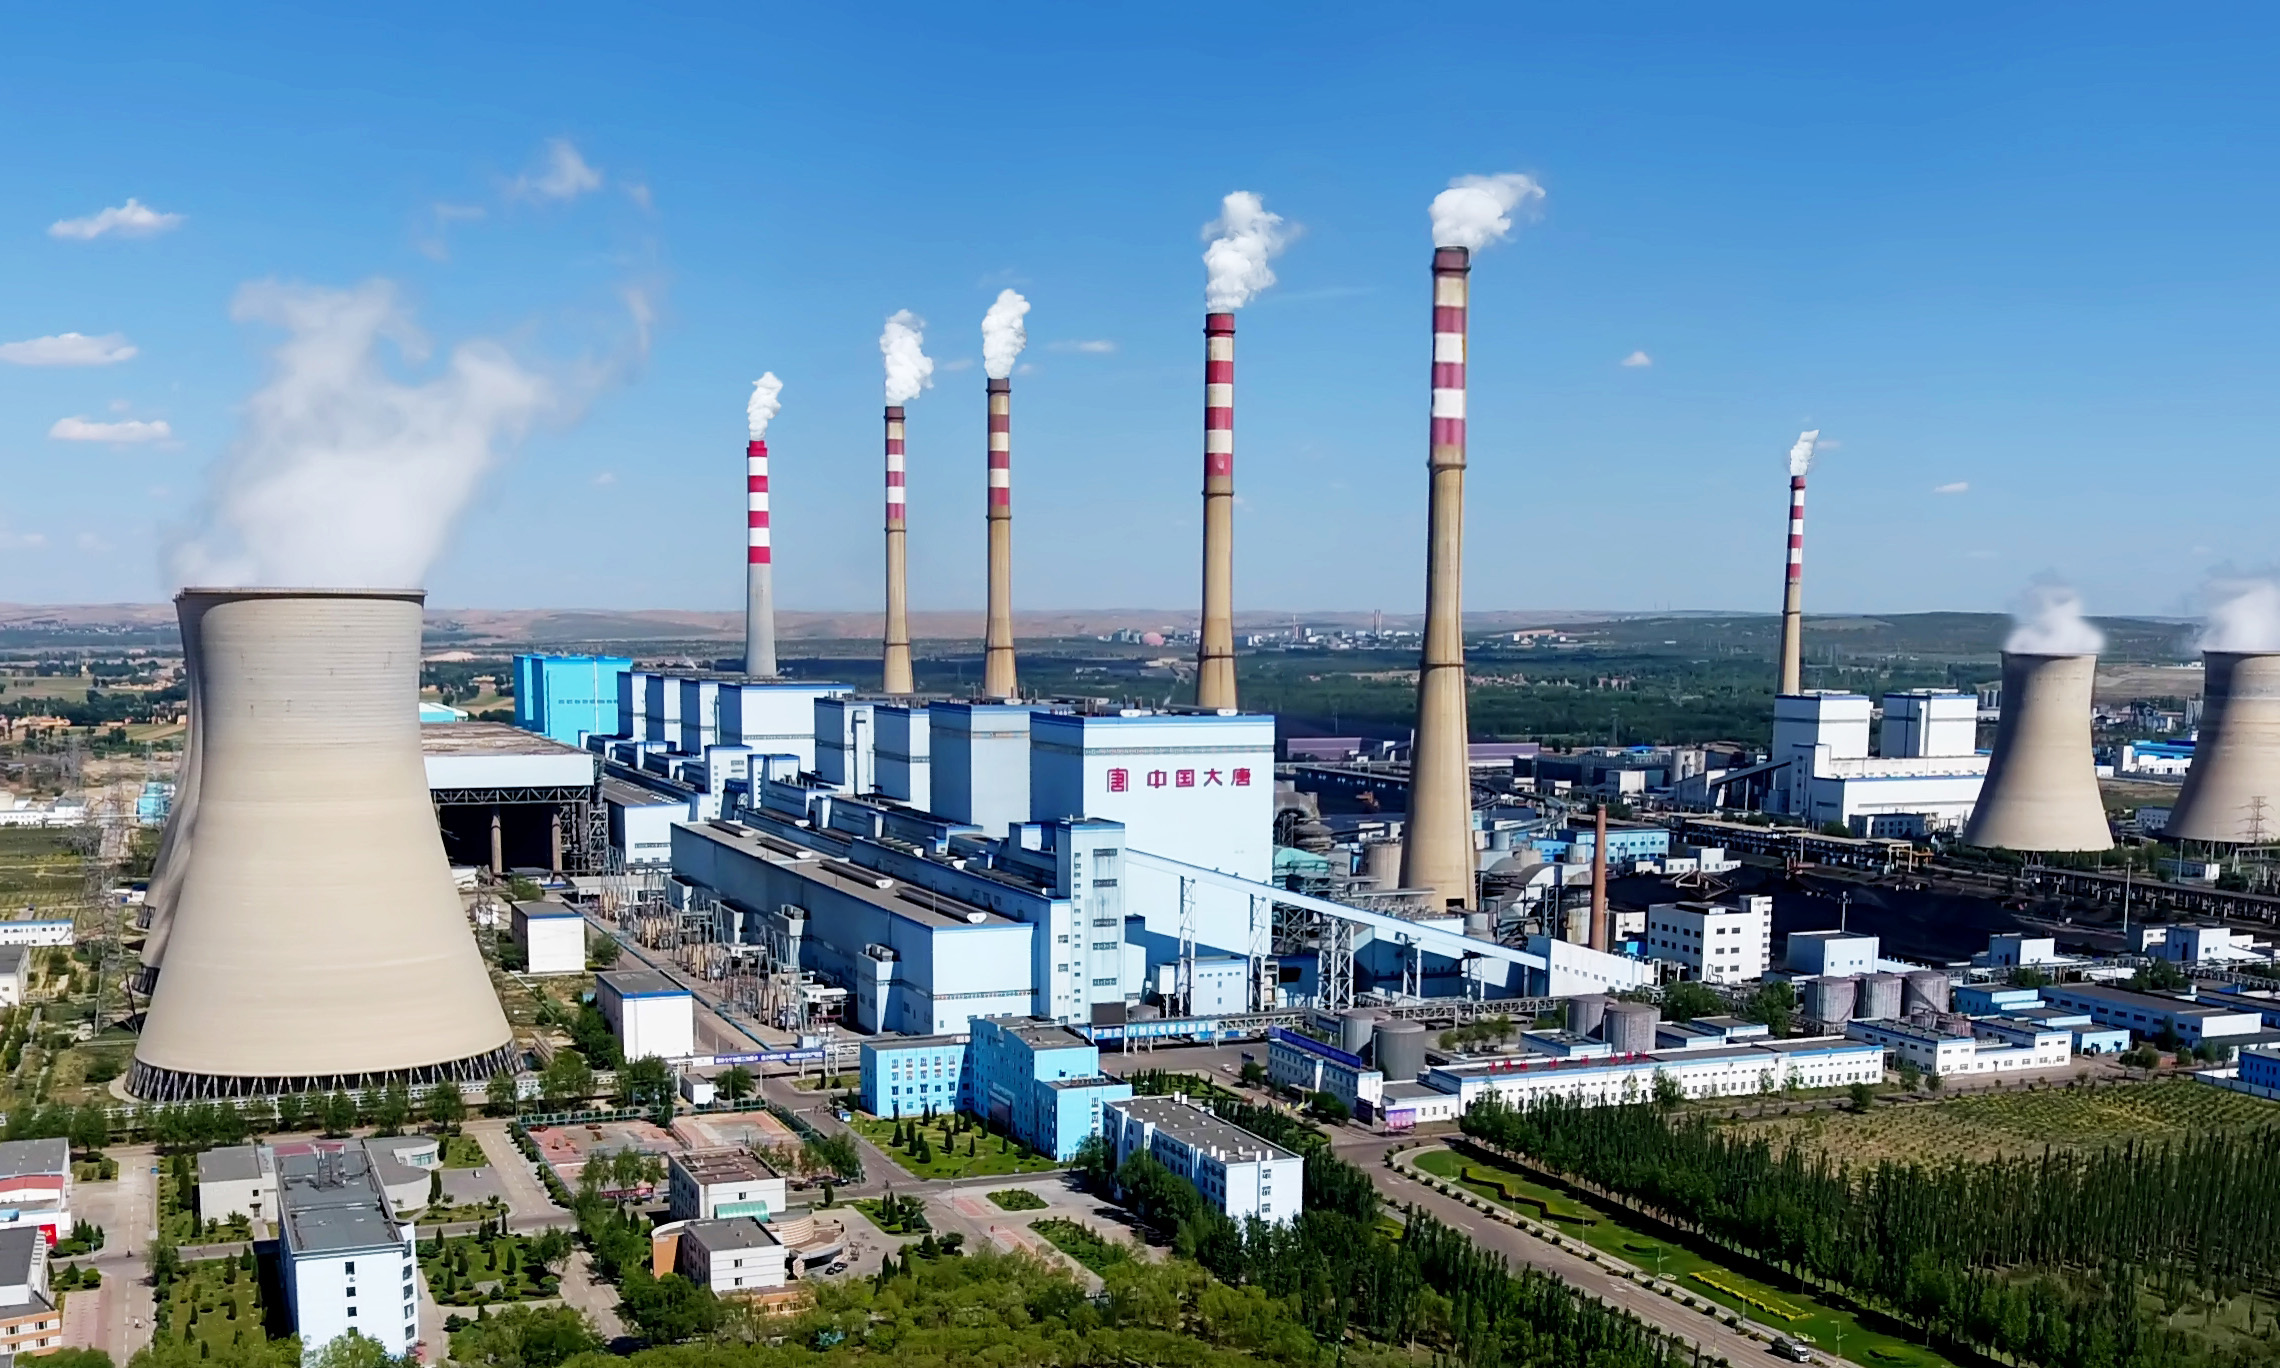 在距离内蒙古呼和浩特市以南70公里的地方，有一座名为托克托的县城，这里坐落着世界在役最大的火力发电厂——大唐国际托克托发电有限责任公司。托电公司是确保首都安全用电的主力电厂，年发电量约占北京地区社会用电总量的四分之一。作为火电领域的“巨无霸”企业，拥有12台机组、被称为“火电航母”的大唐托电总装机容量达到672万千瓦，肩负的节能减排责任巨大。图为大唐托电厂区。(供图：中国大唐集团公司)